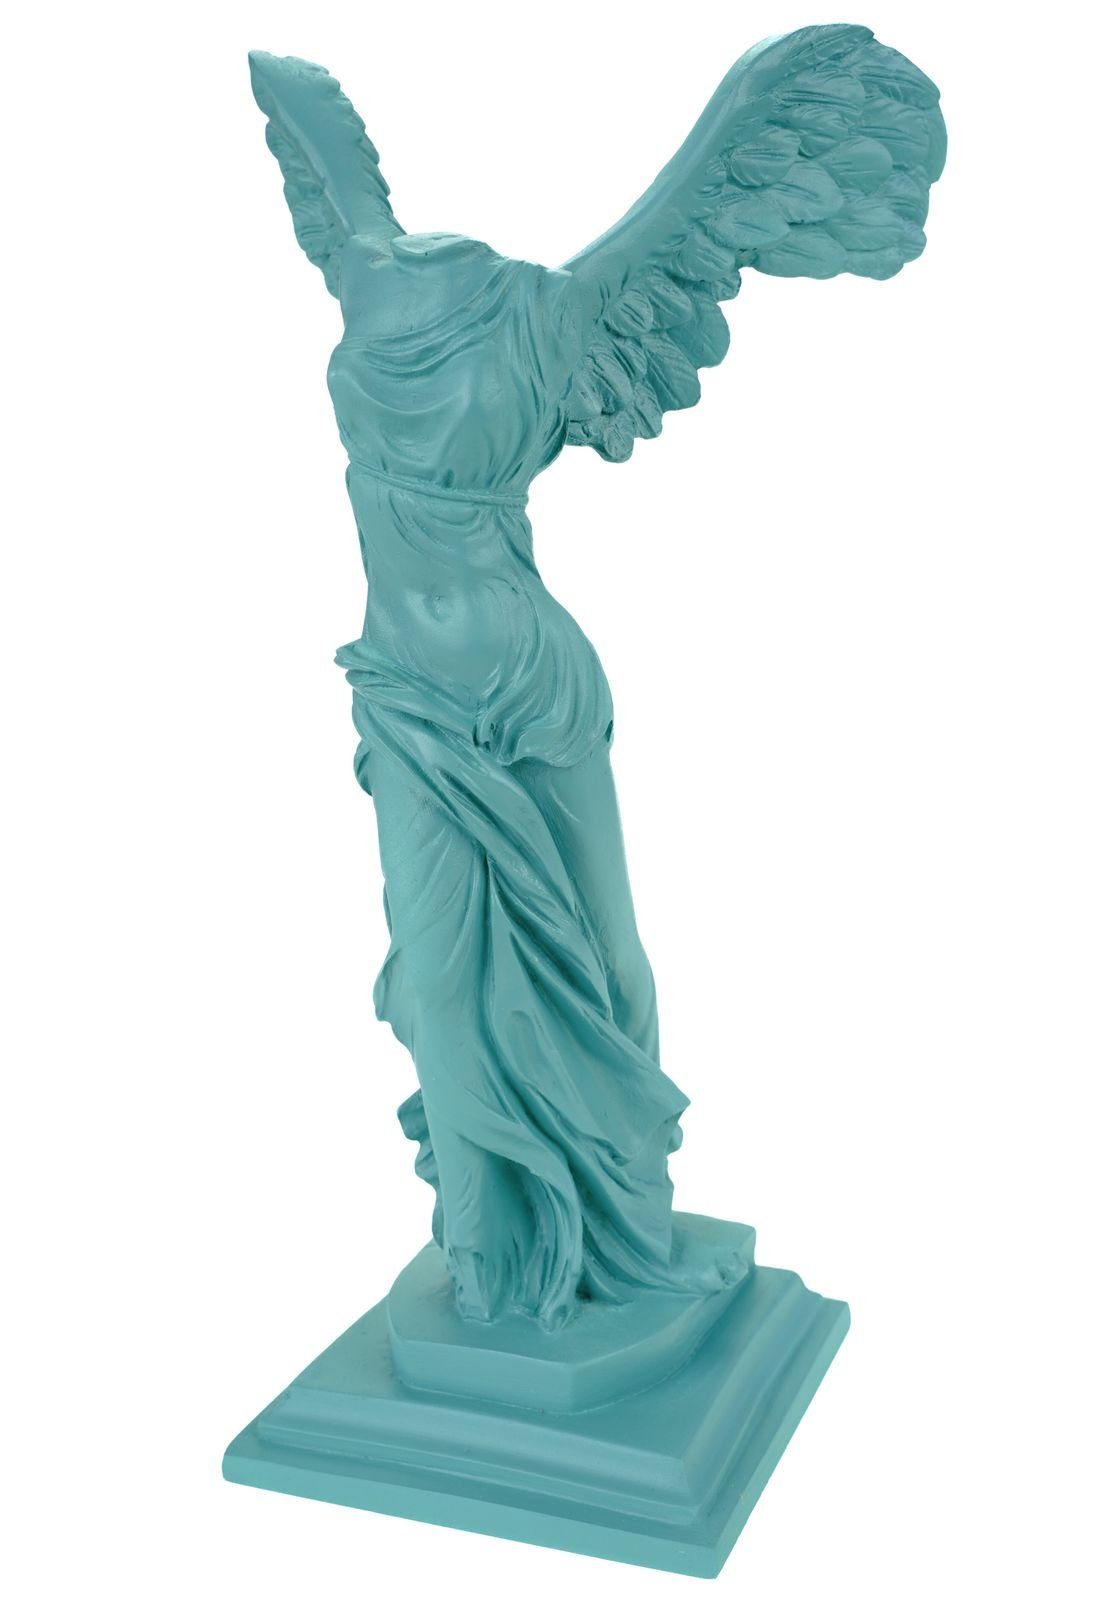 Kremers Schatzkiste Dekofigur Alabaster Nike Siegesgöttin von Samothrake Figur Skulptur 29 cm Türkis Siegesdenkmal | Dekofiguren